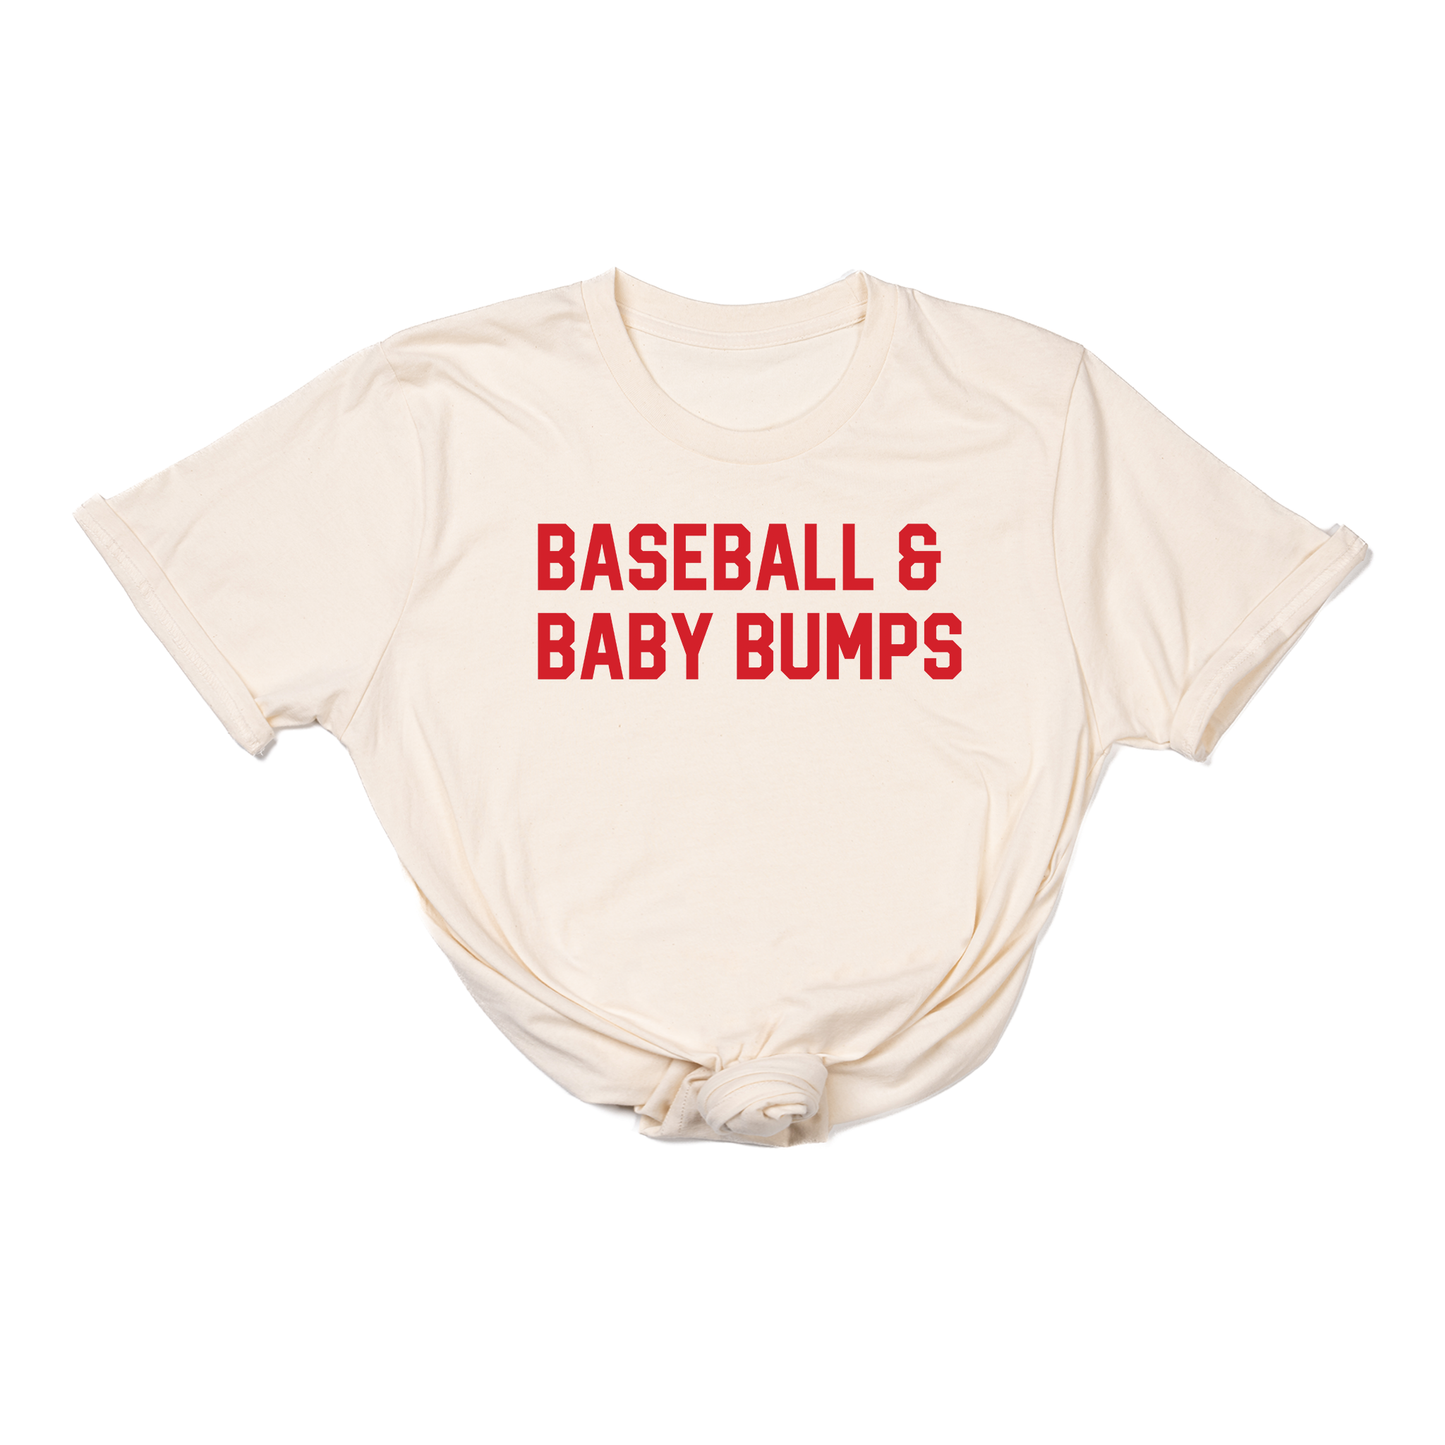 Baseball & Baby Bumps (Red) - Tee (Natural)